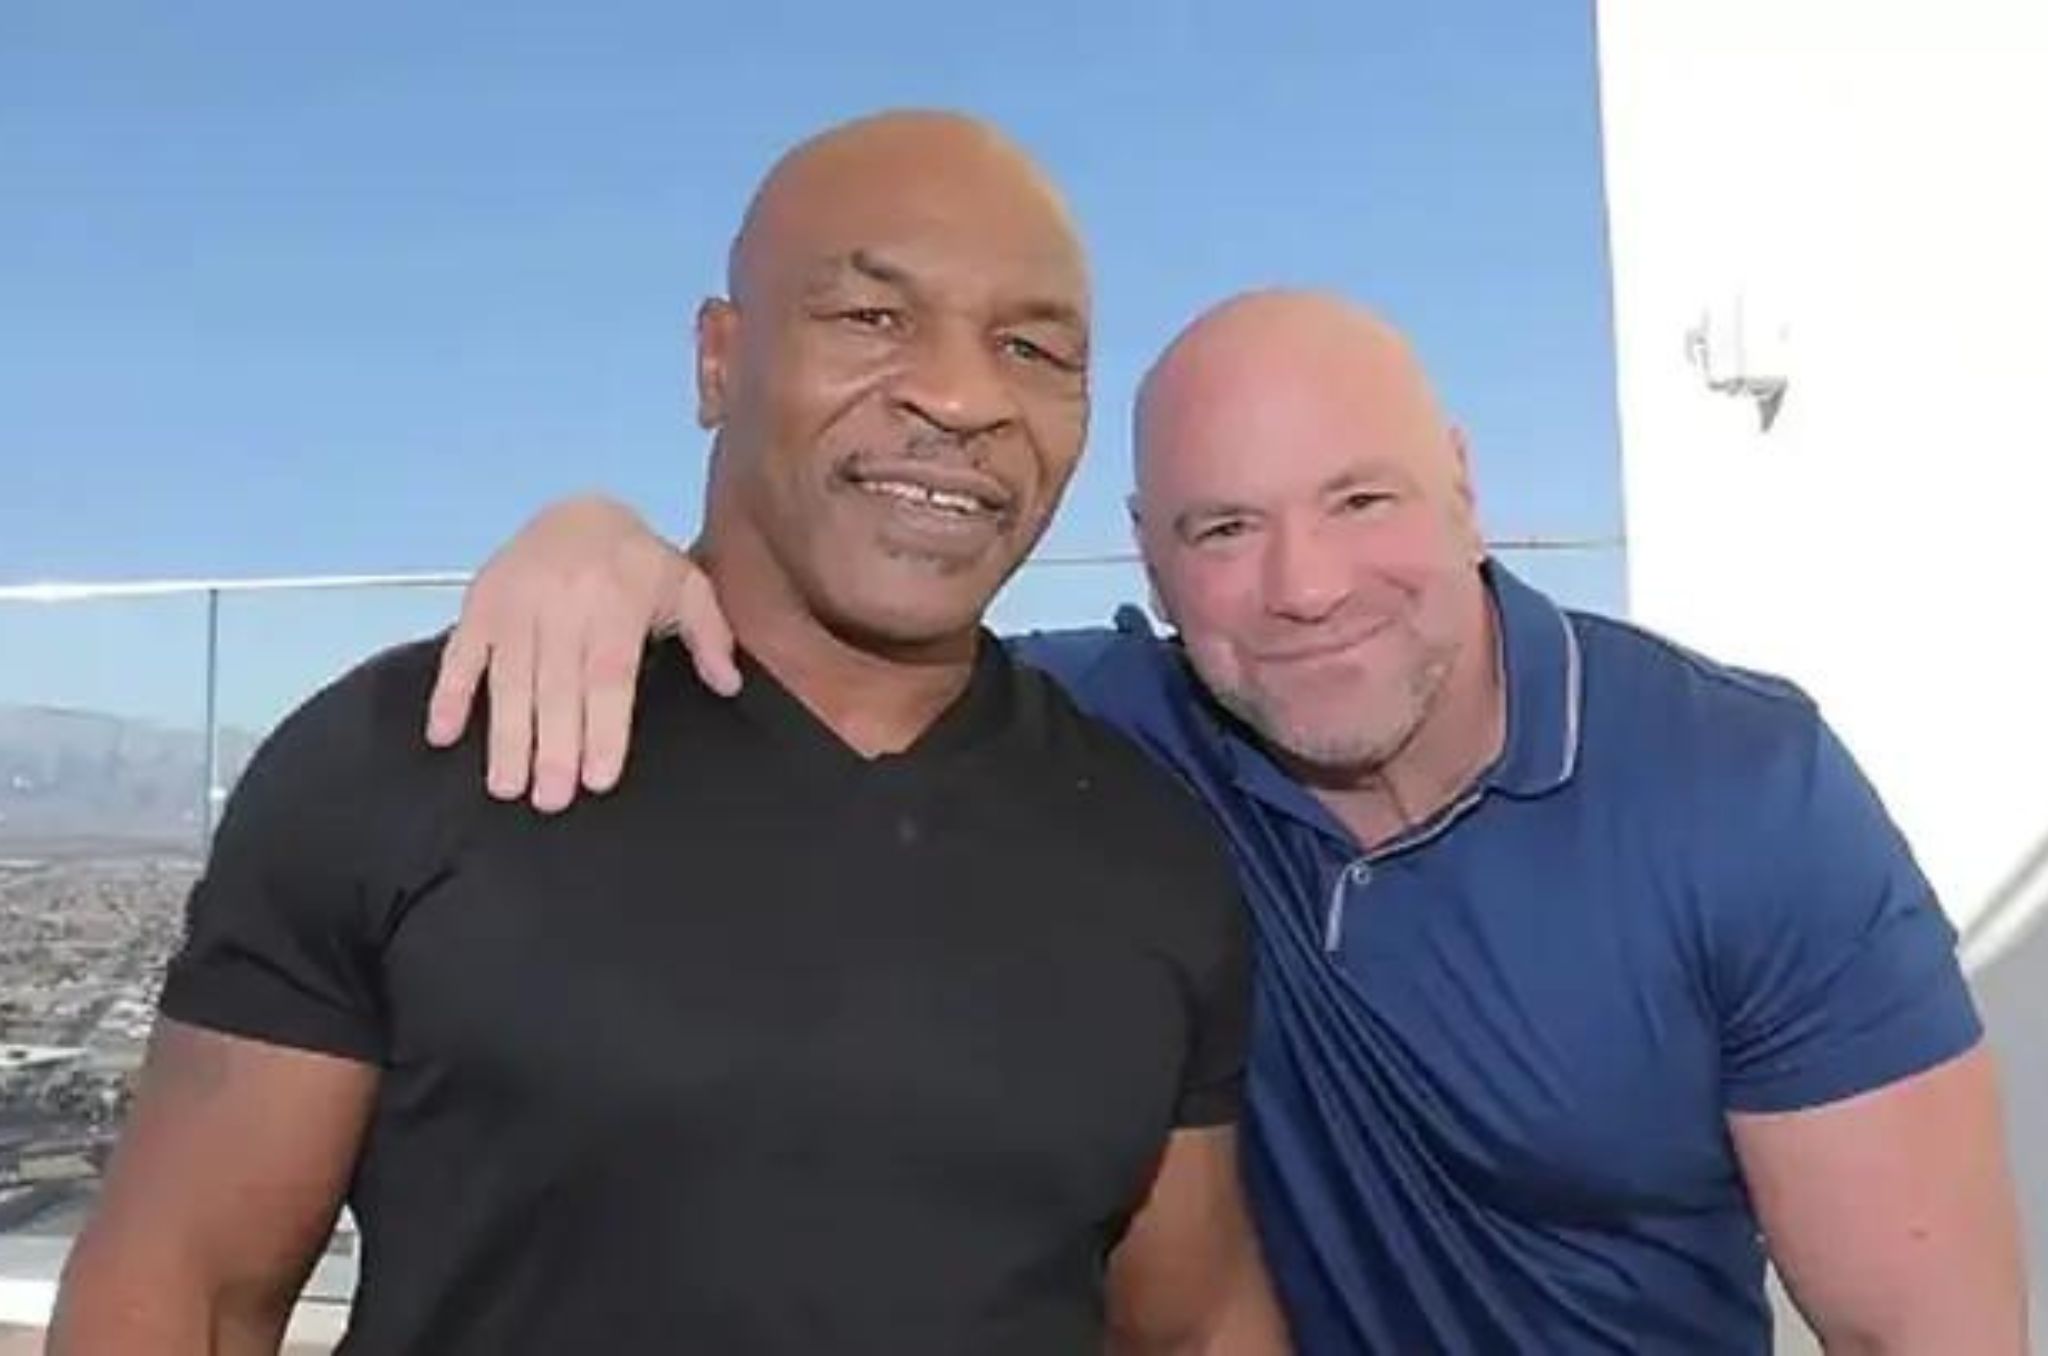 Dana White Critica Luta em Mike Tyson e Jake Paul: “É simplemente ridiculo”